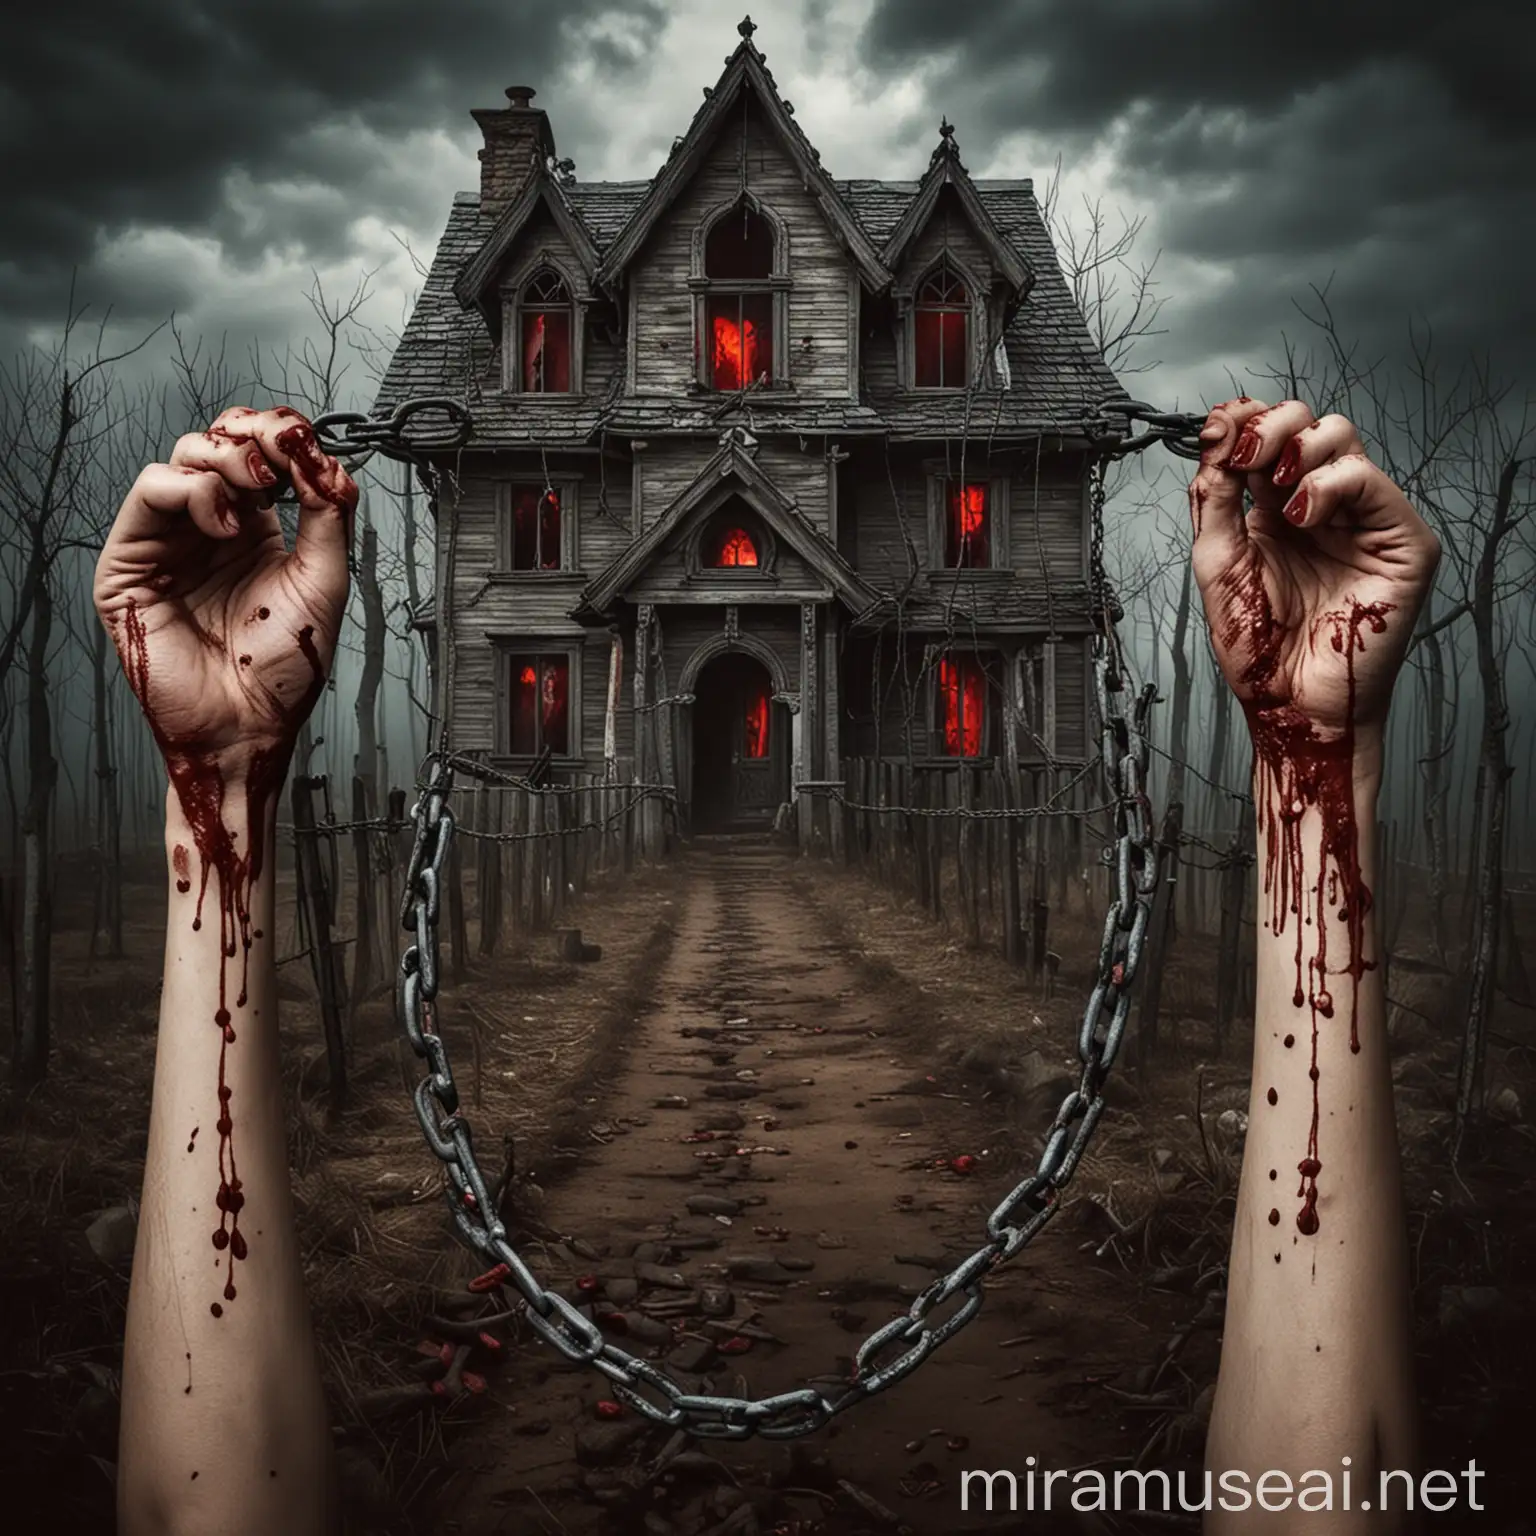 crea una imagen donde hayan unas manos sosteniendo una cadena y que esta cadena esté con una casa con sangre